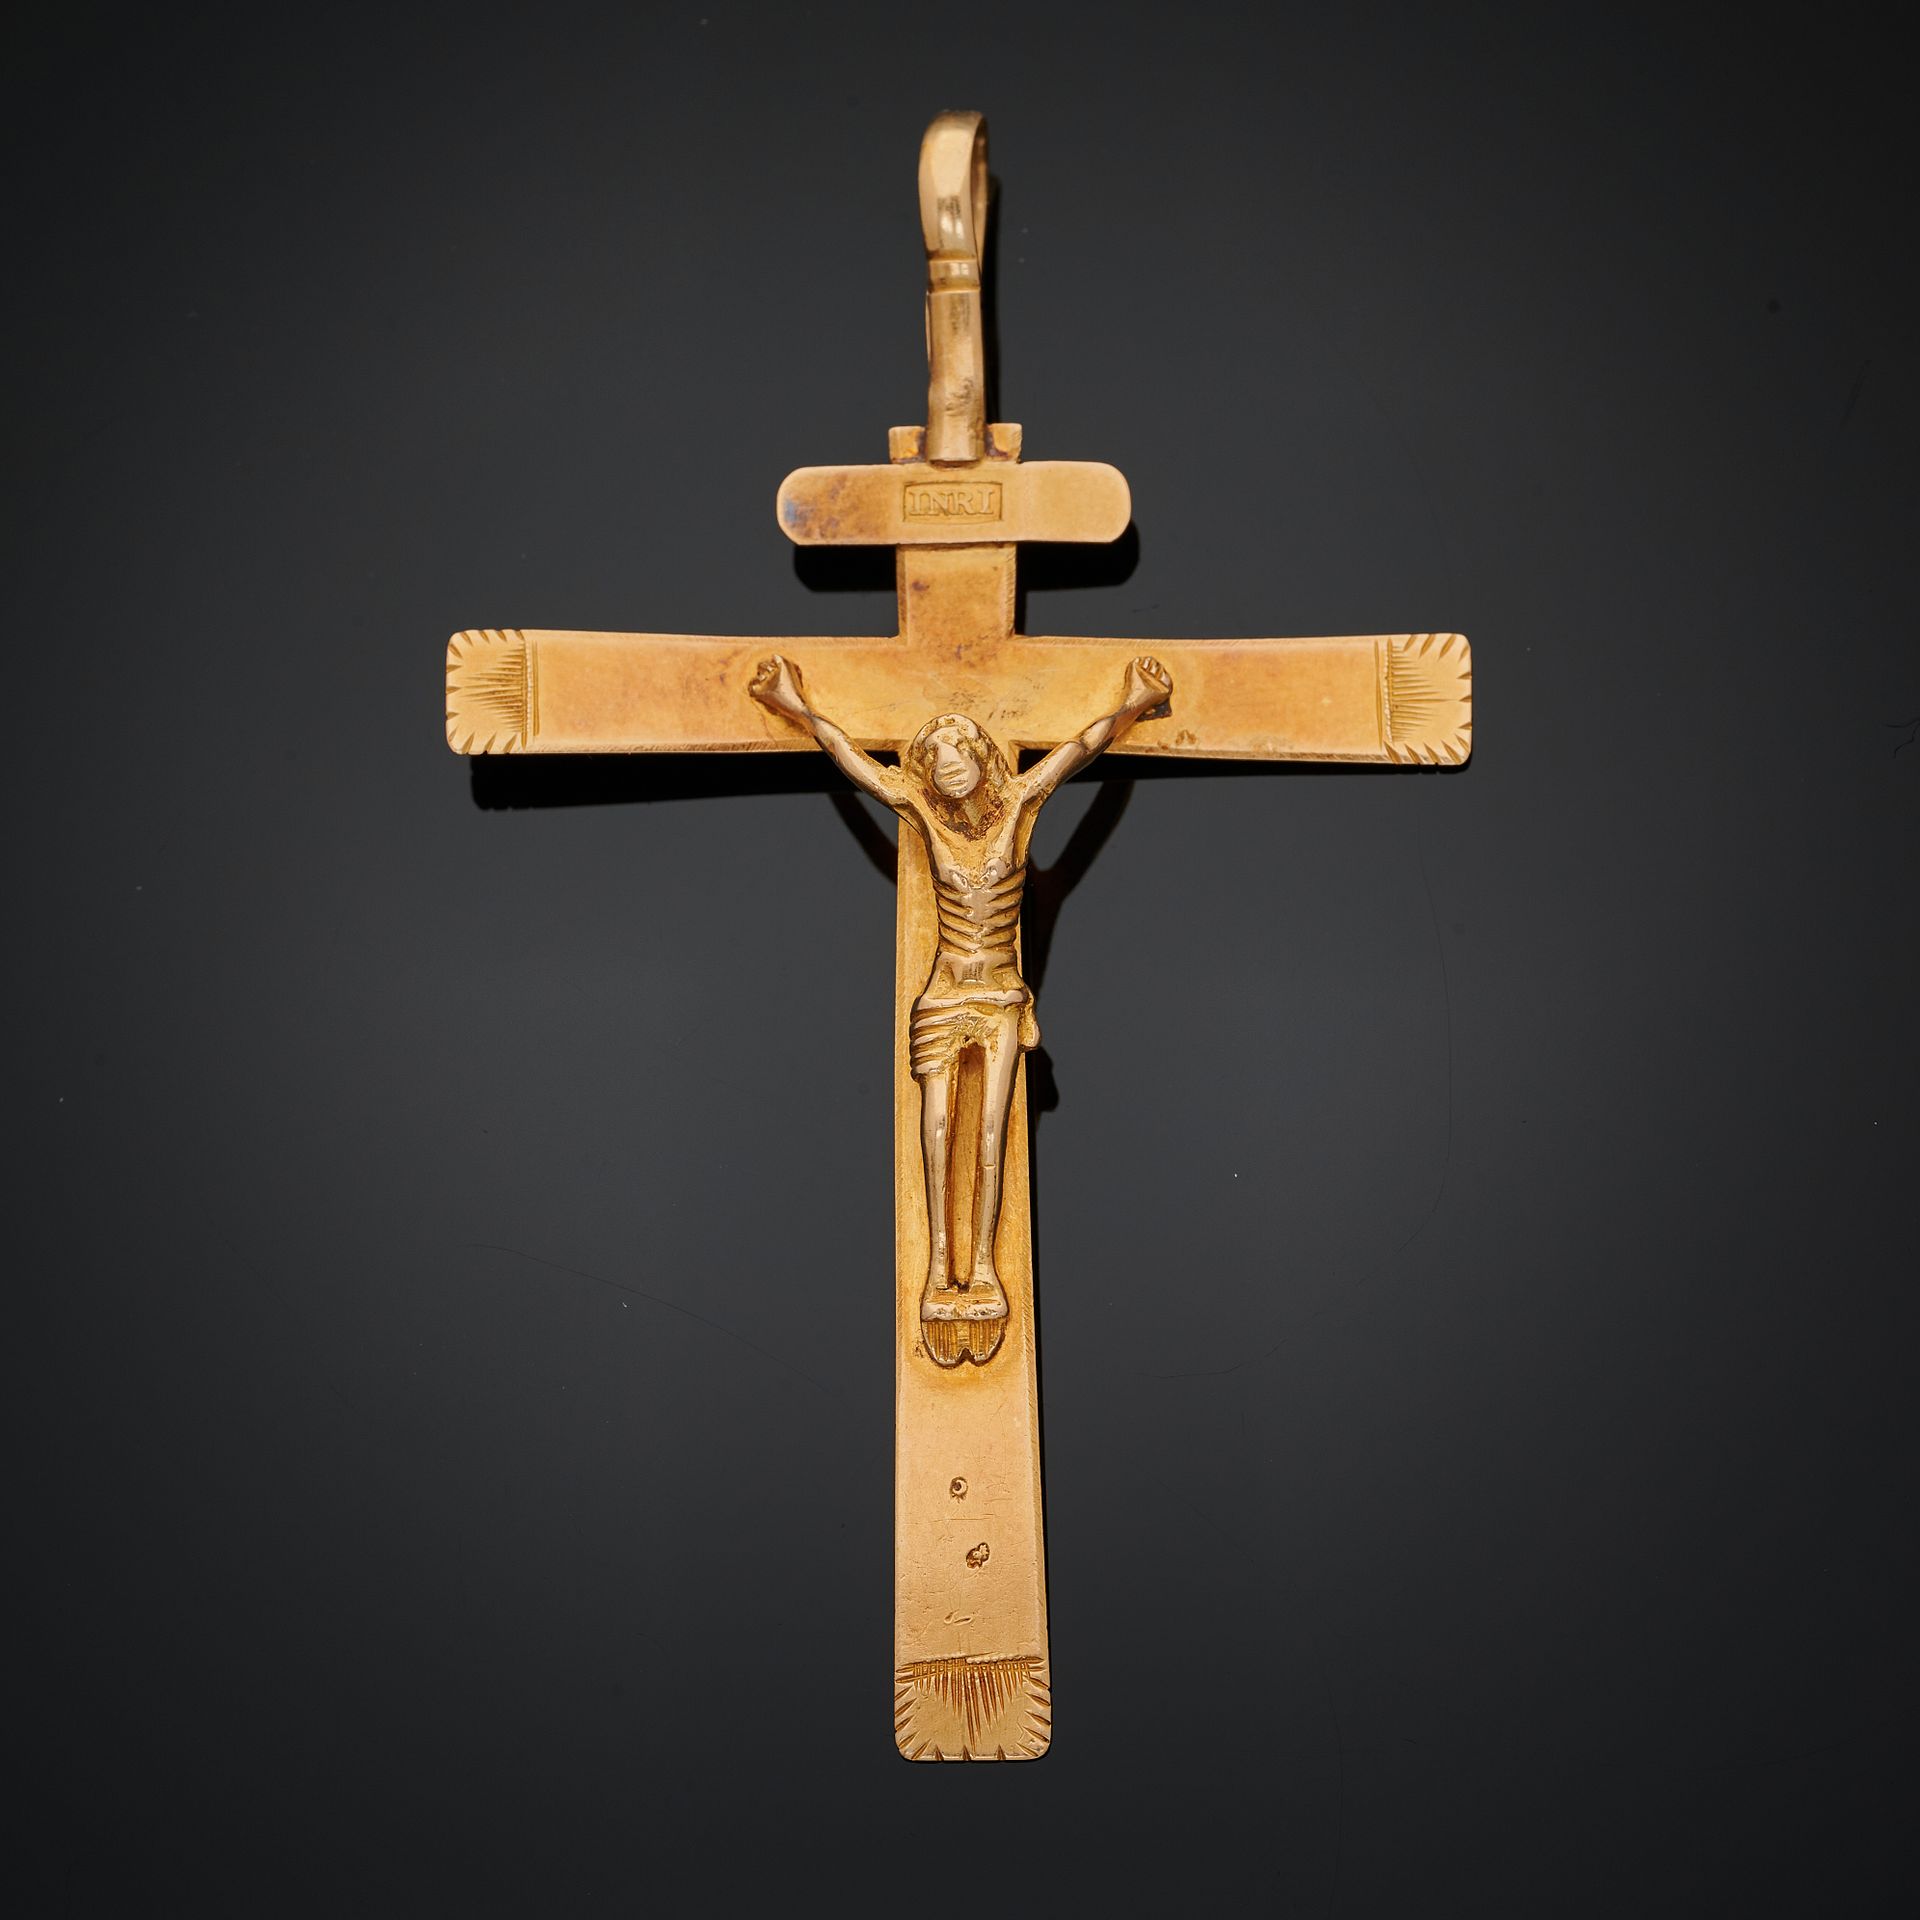 Null 金质十字架吊坠。18世纪的法国作品。
尺寸 : 4,5 x 7,5
净重 : 6,5 g